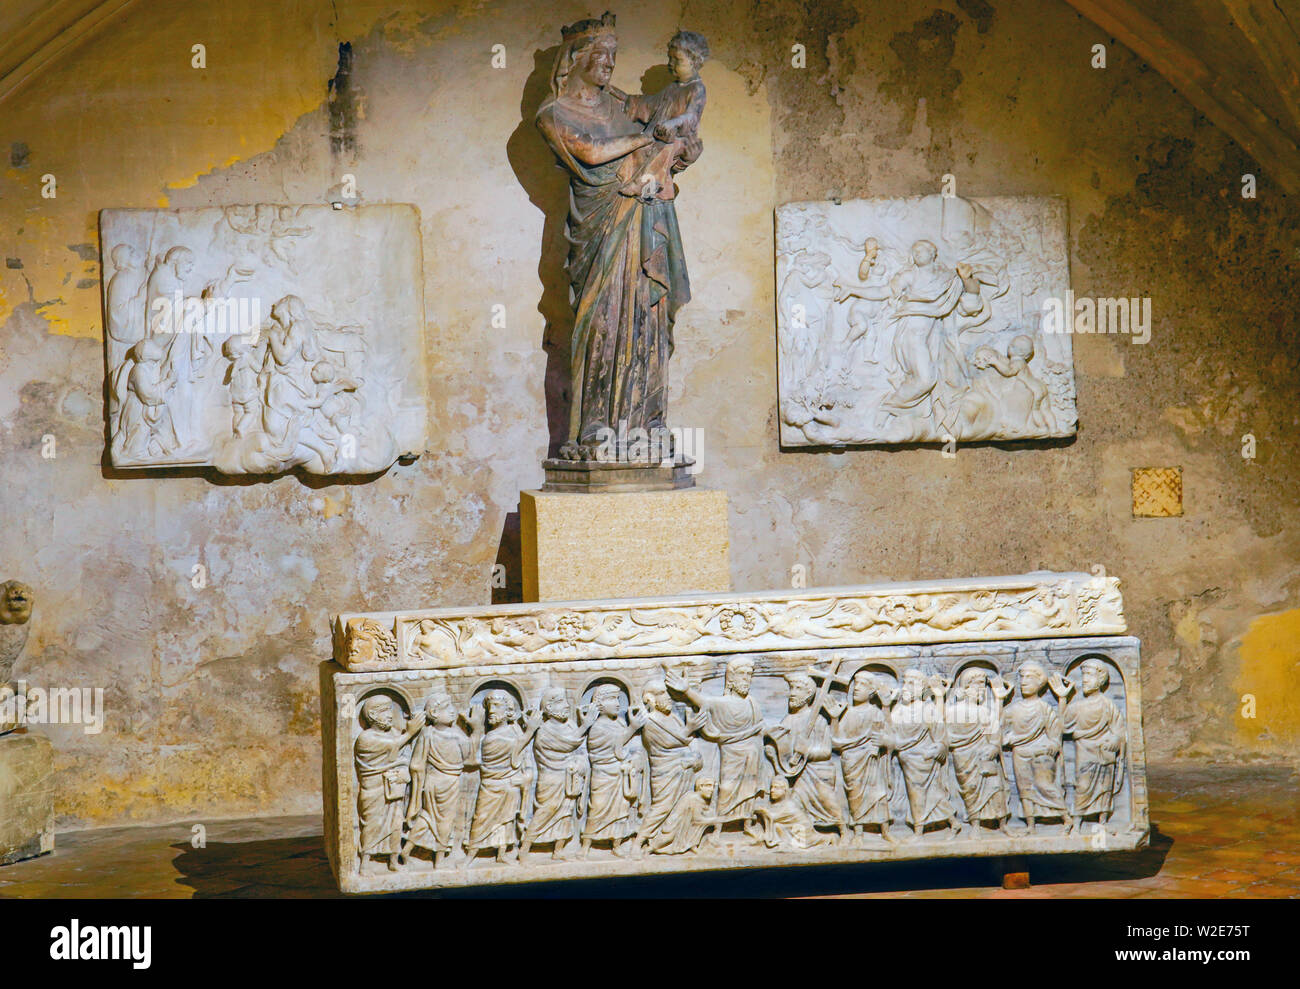 Célèbre sarcophage du martyr Saint mitre dans la cathédrale Saint-Sauveur à Aix-en-Provence. Aix est la ville française, située dans le sud de la France. Banque D'Images